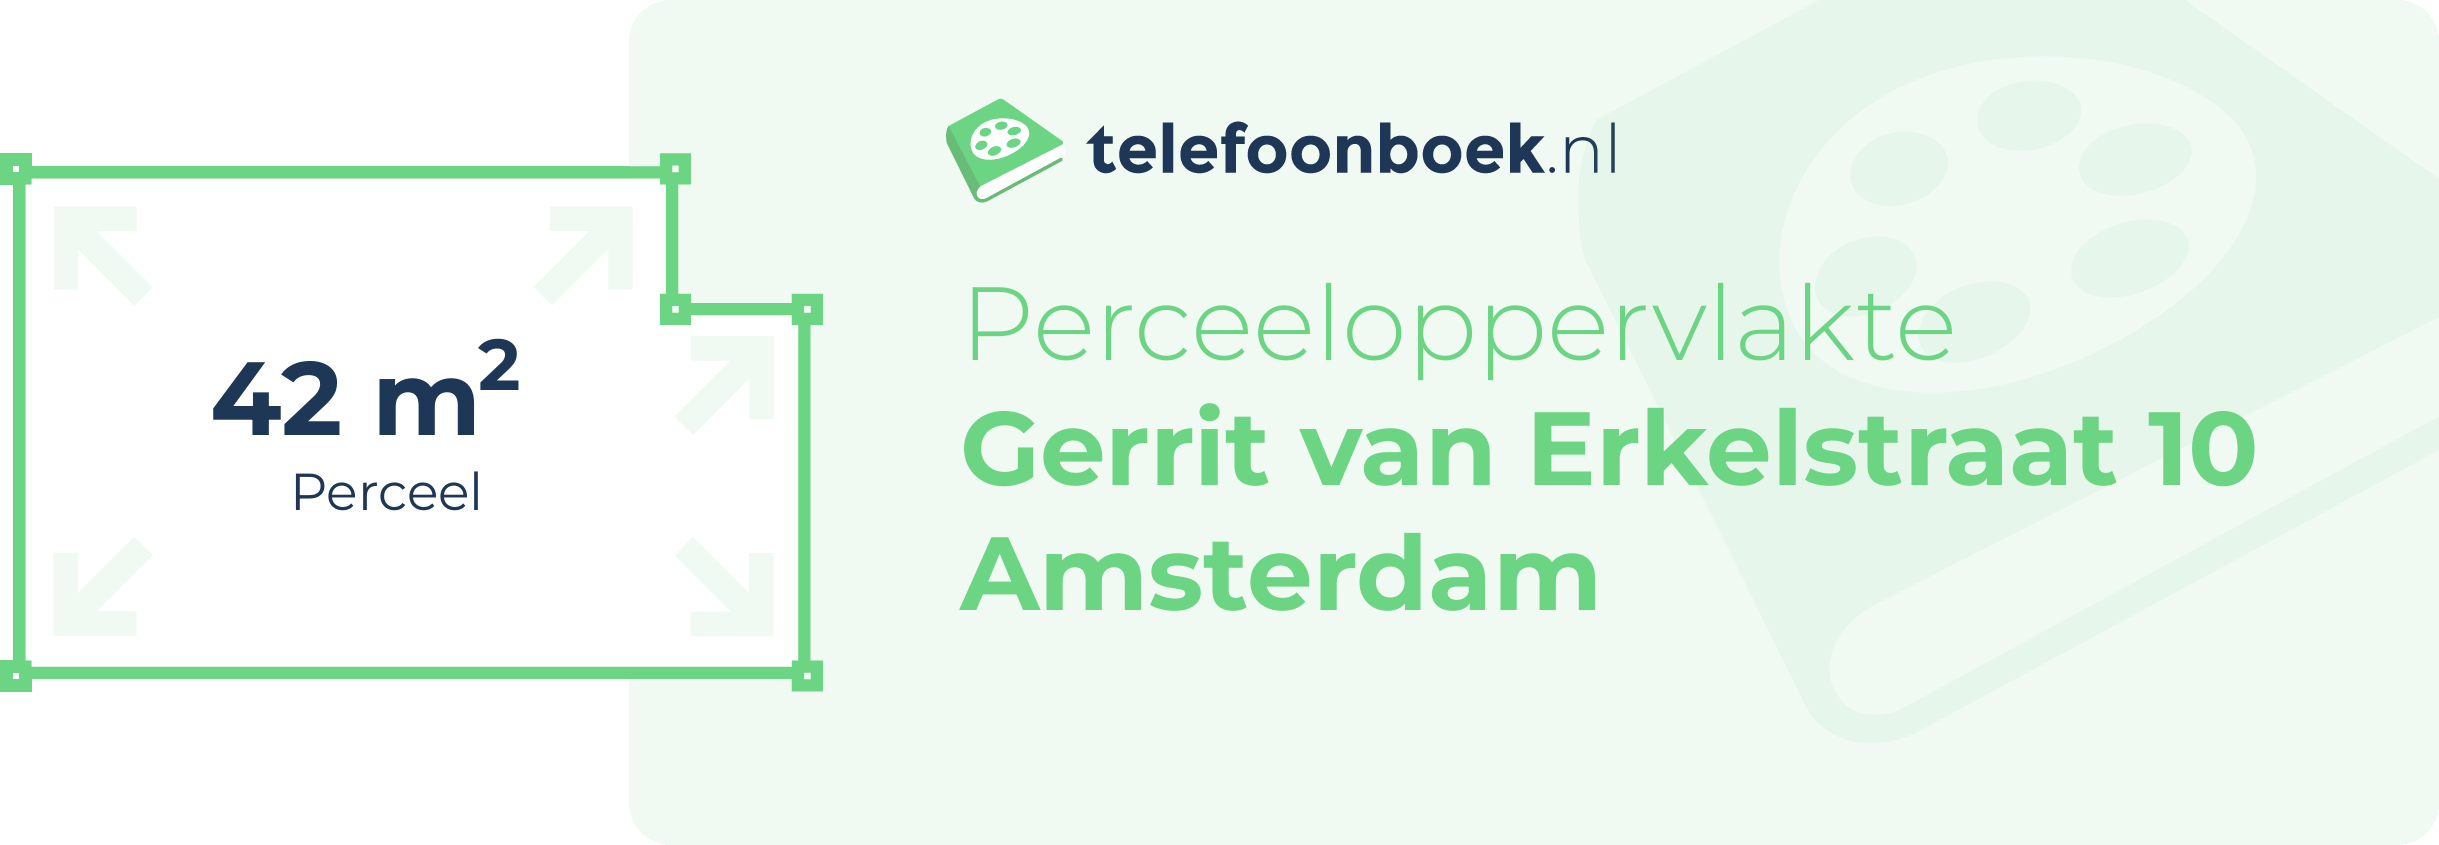 Perceeloppervlakte Gerrit Van Erkelstraat 10 Amsterdam